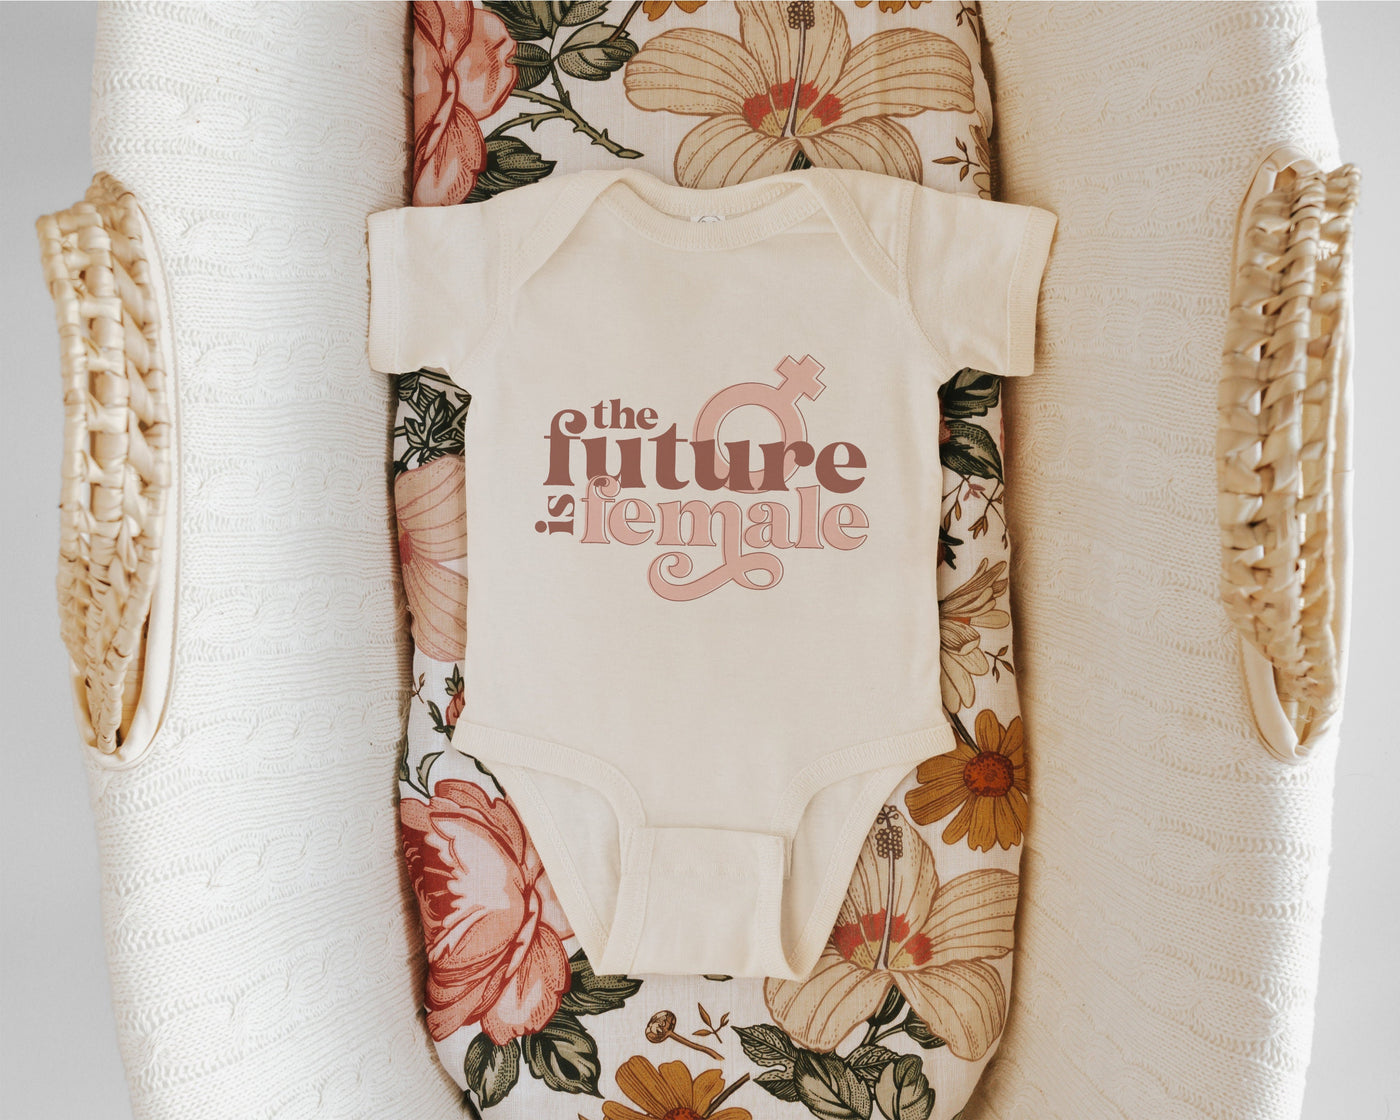 The Future is Female, Feminist Bodysuit, Little Feminist, Feminist Baby Clothes, Newborn Girl Gift, Infant Jumpsuit, Baby Girl Romper, Baby